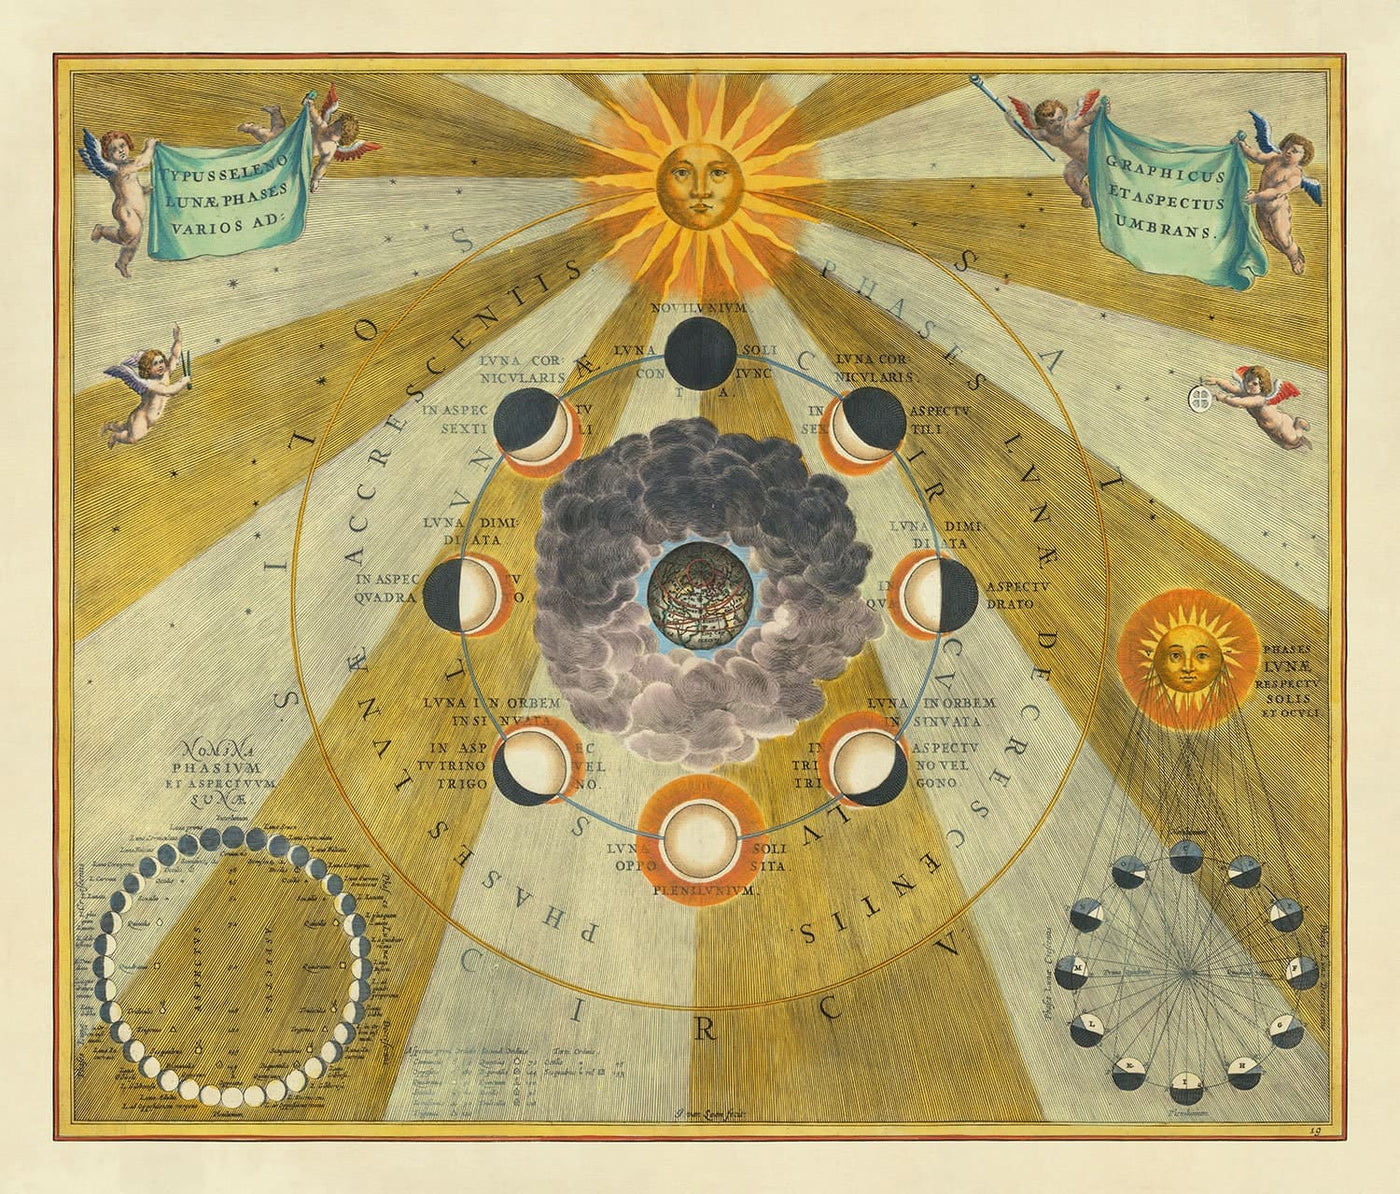 Alte Karte der Mondphasen, 1661 von Cellarius - Mondzyklen, frühe Planetenbewegung Bildung